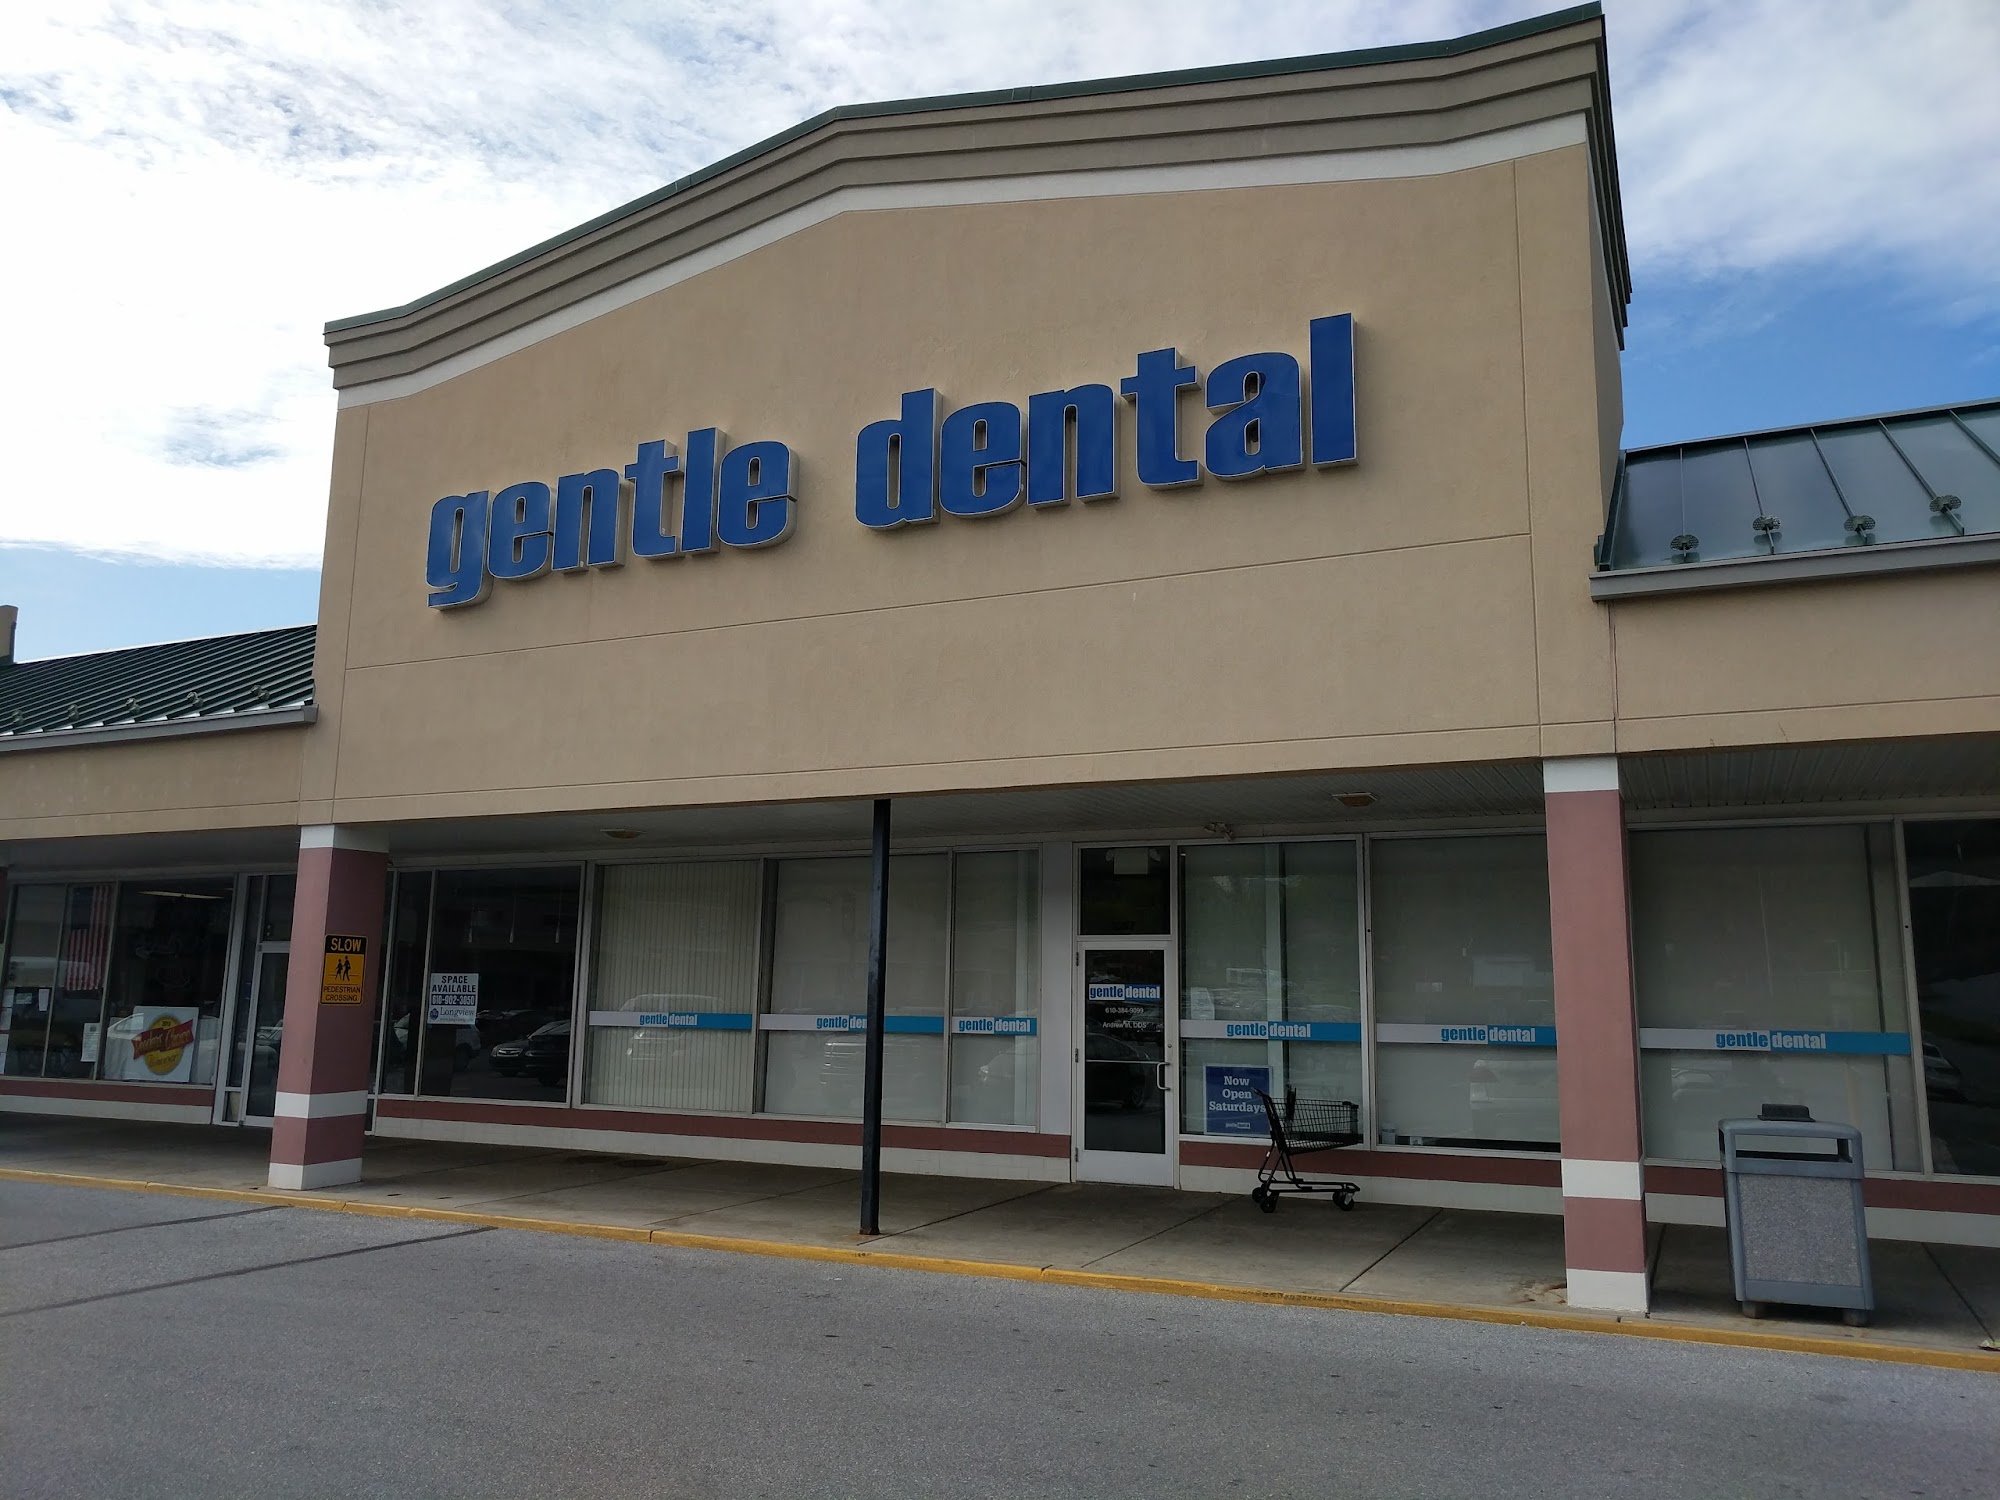 Gentle Dental of Thorndale